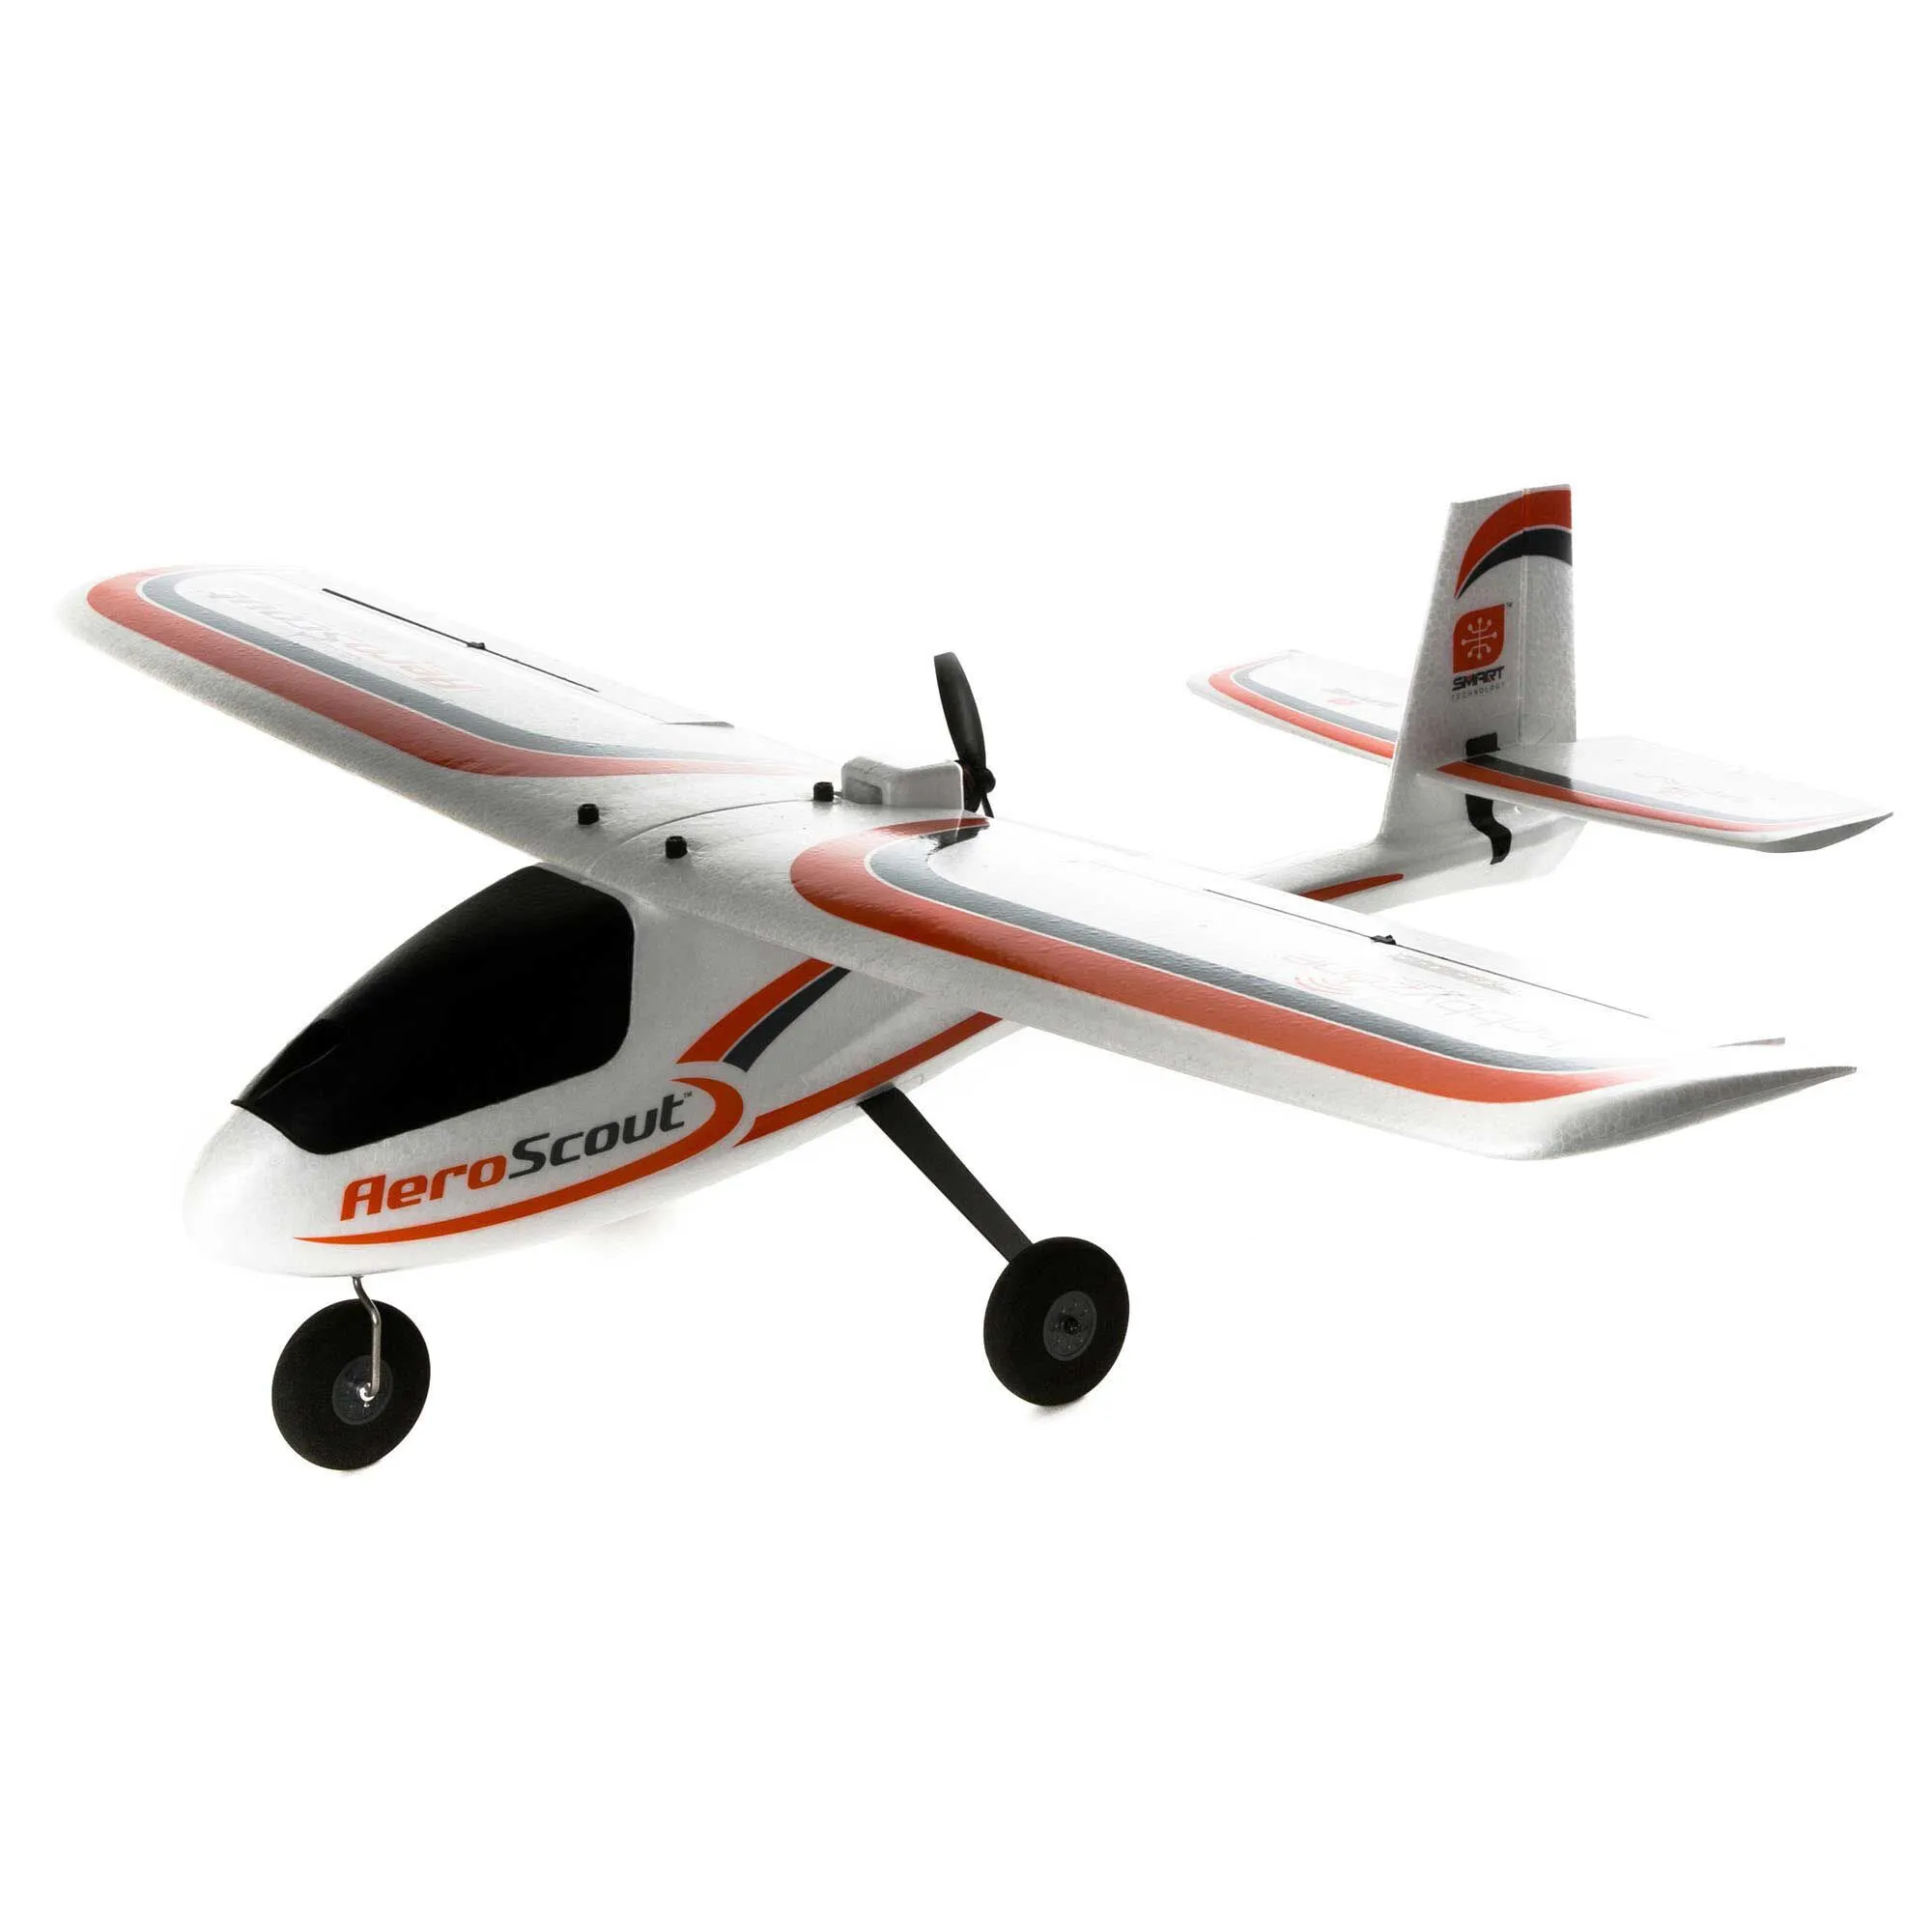 Hobbyzone AeroScout 1.1m with SAFE Technology, RTF Basic, Mode 2